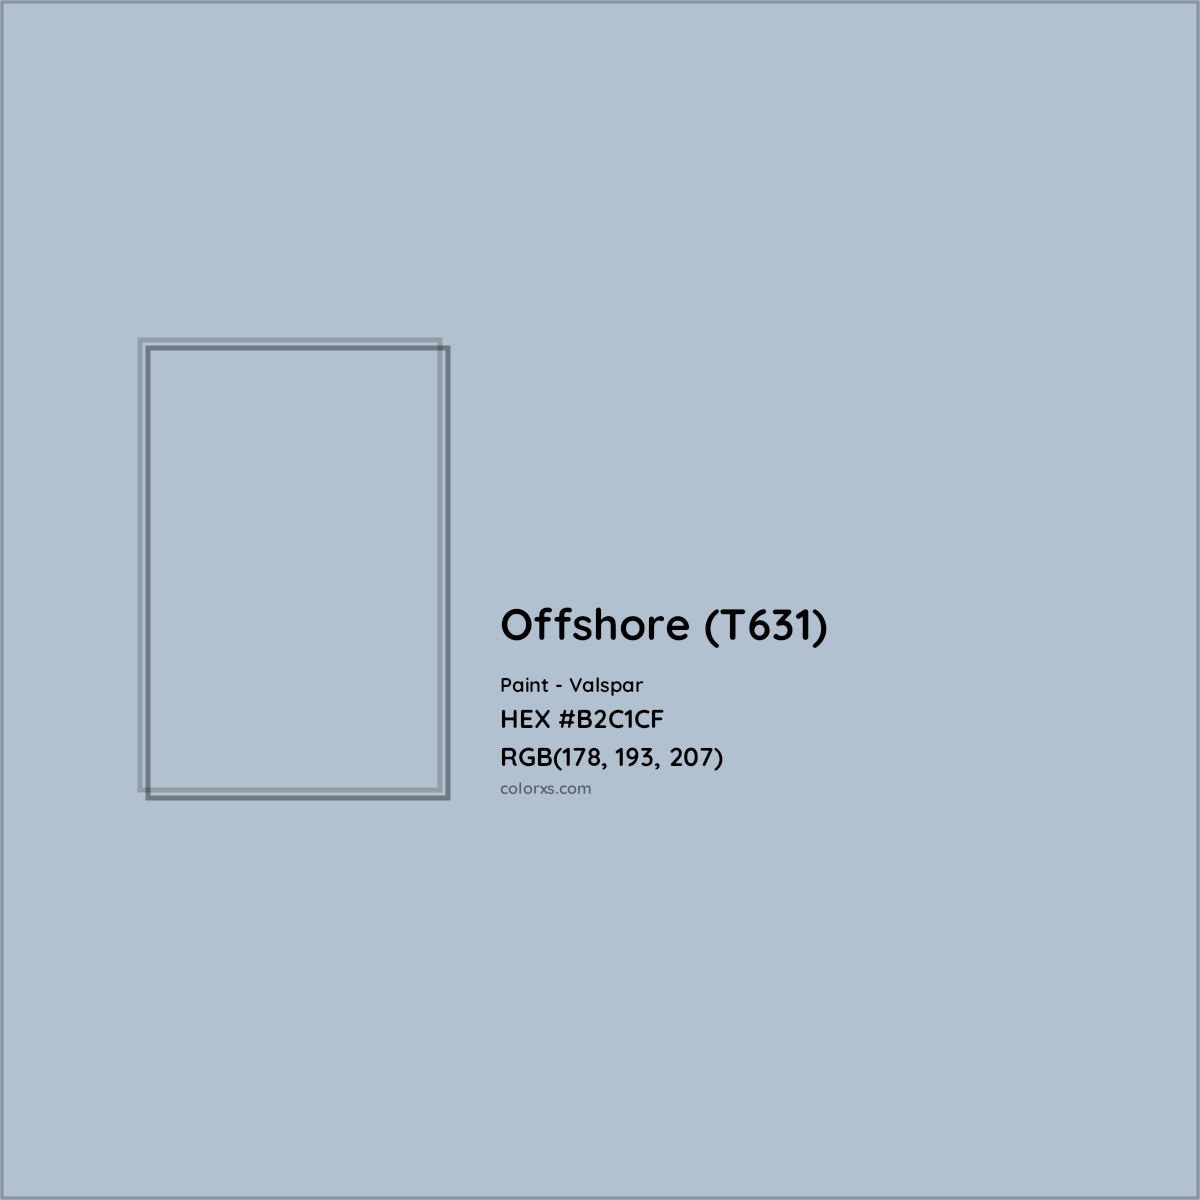 HEX #B2C1CF Offshore (T631) Paint Valspar - Color Code